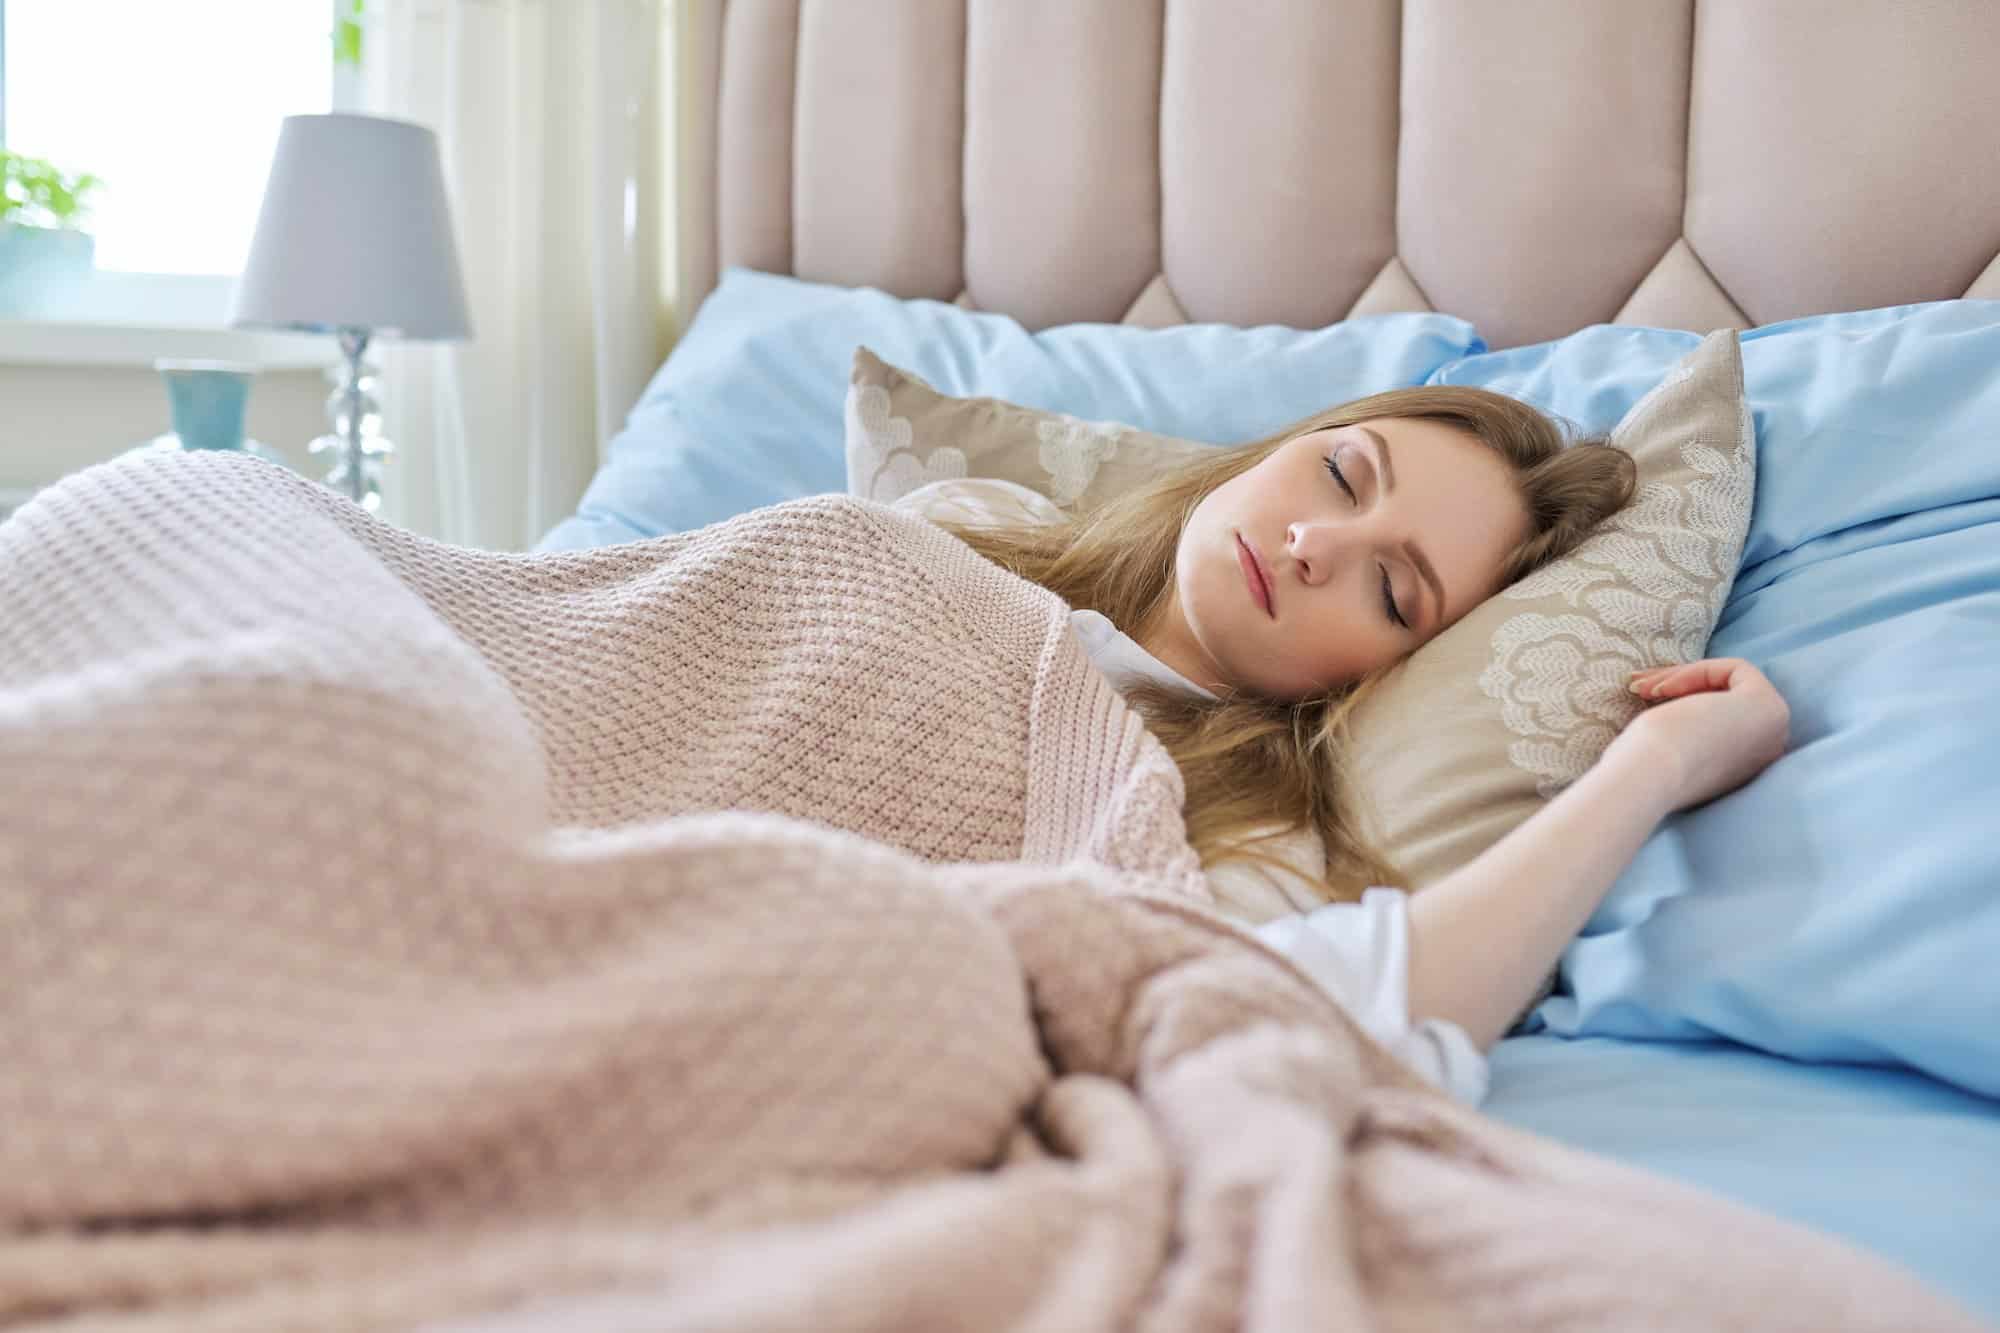 Ύπνος: Αν έχετε άπνοια και κοιμάστε λιγότερο από 7 ώρες αυξάνεται ο κίνδυνος θνησιμότητας 